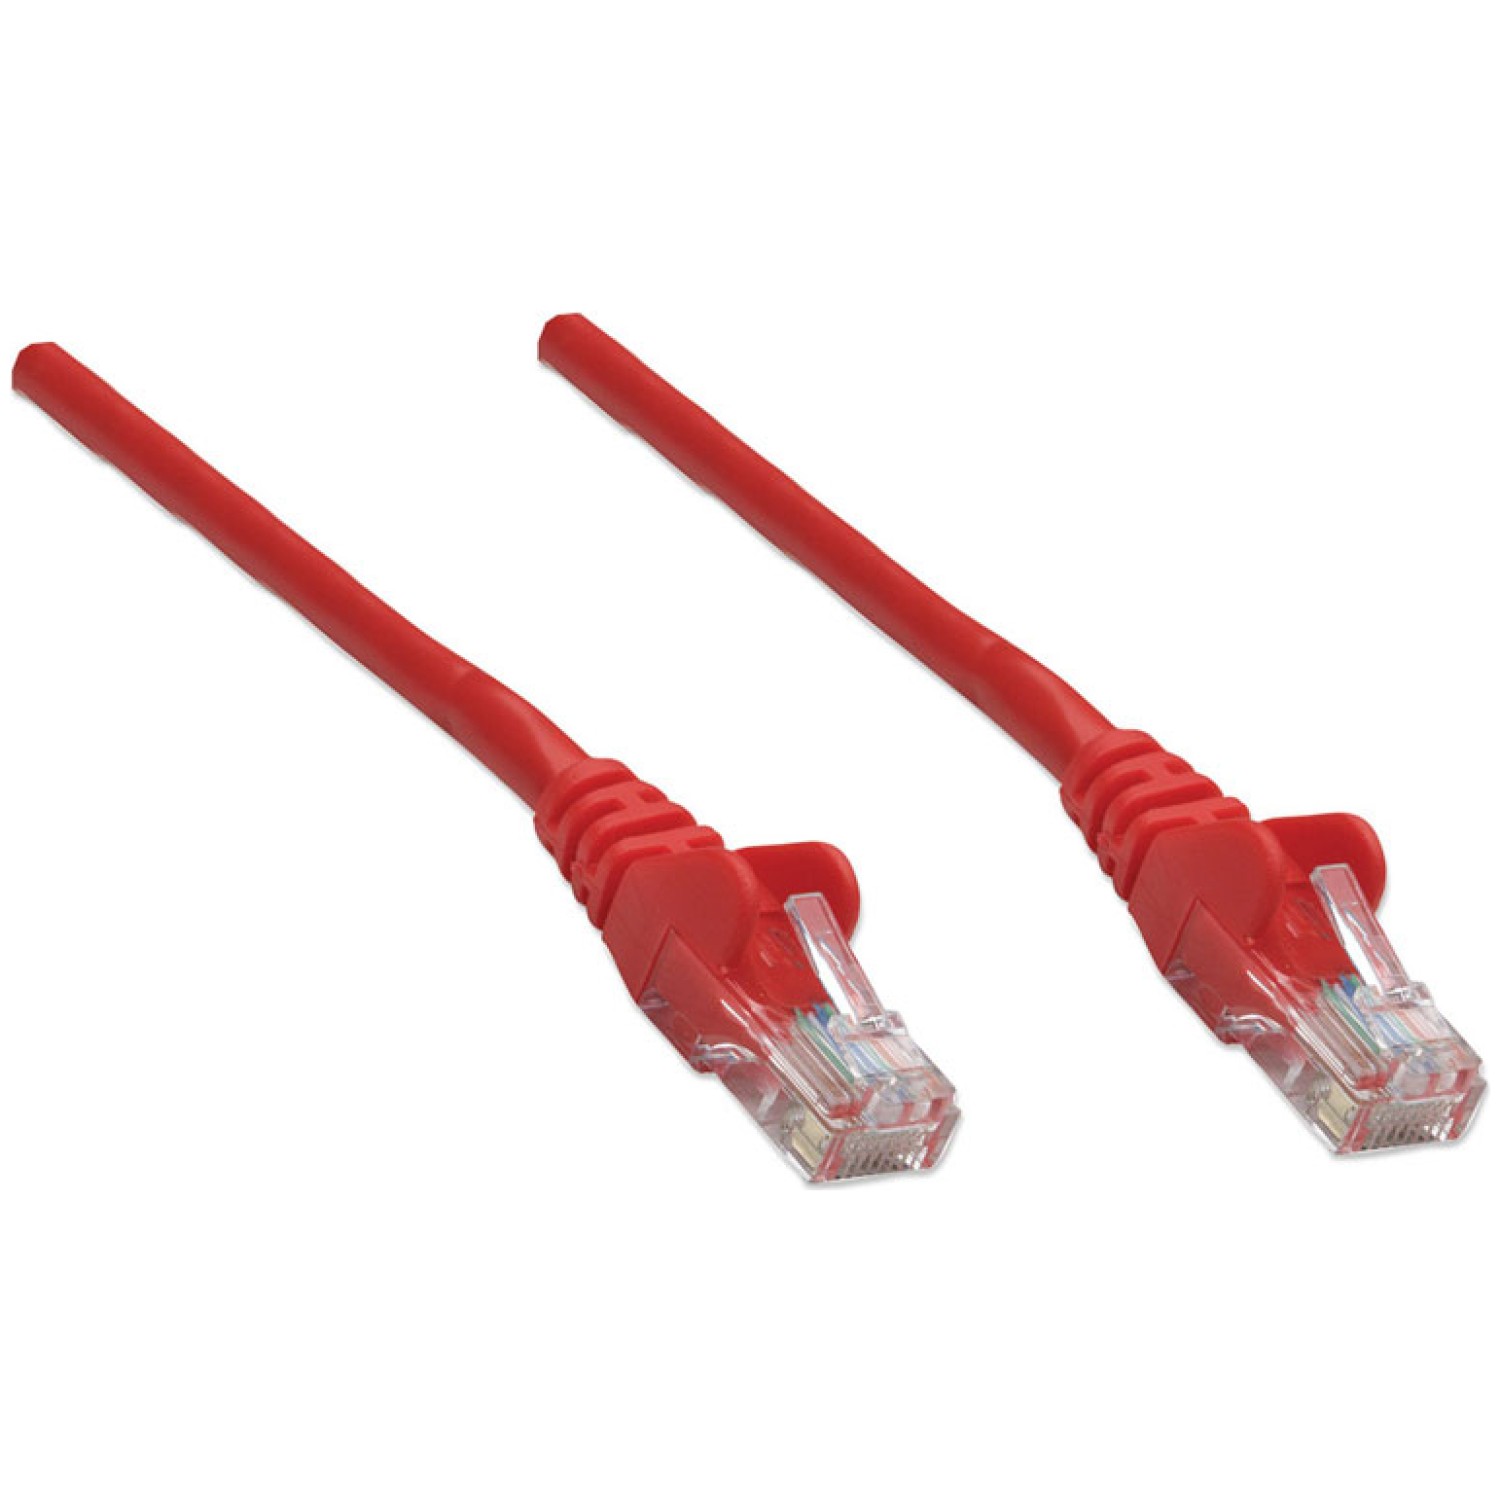 kategorija CAT5e. Omrežni kabel omogoča priročno in zanesljivo povezavo z ene omrežne naprave